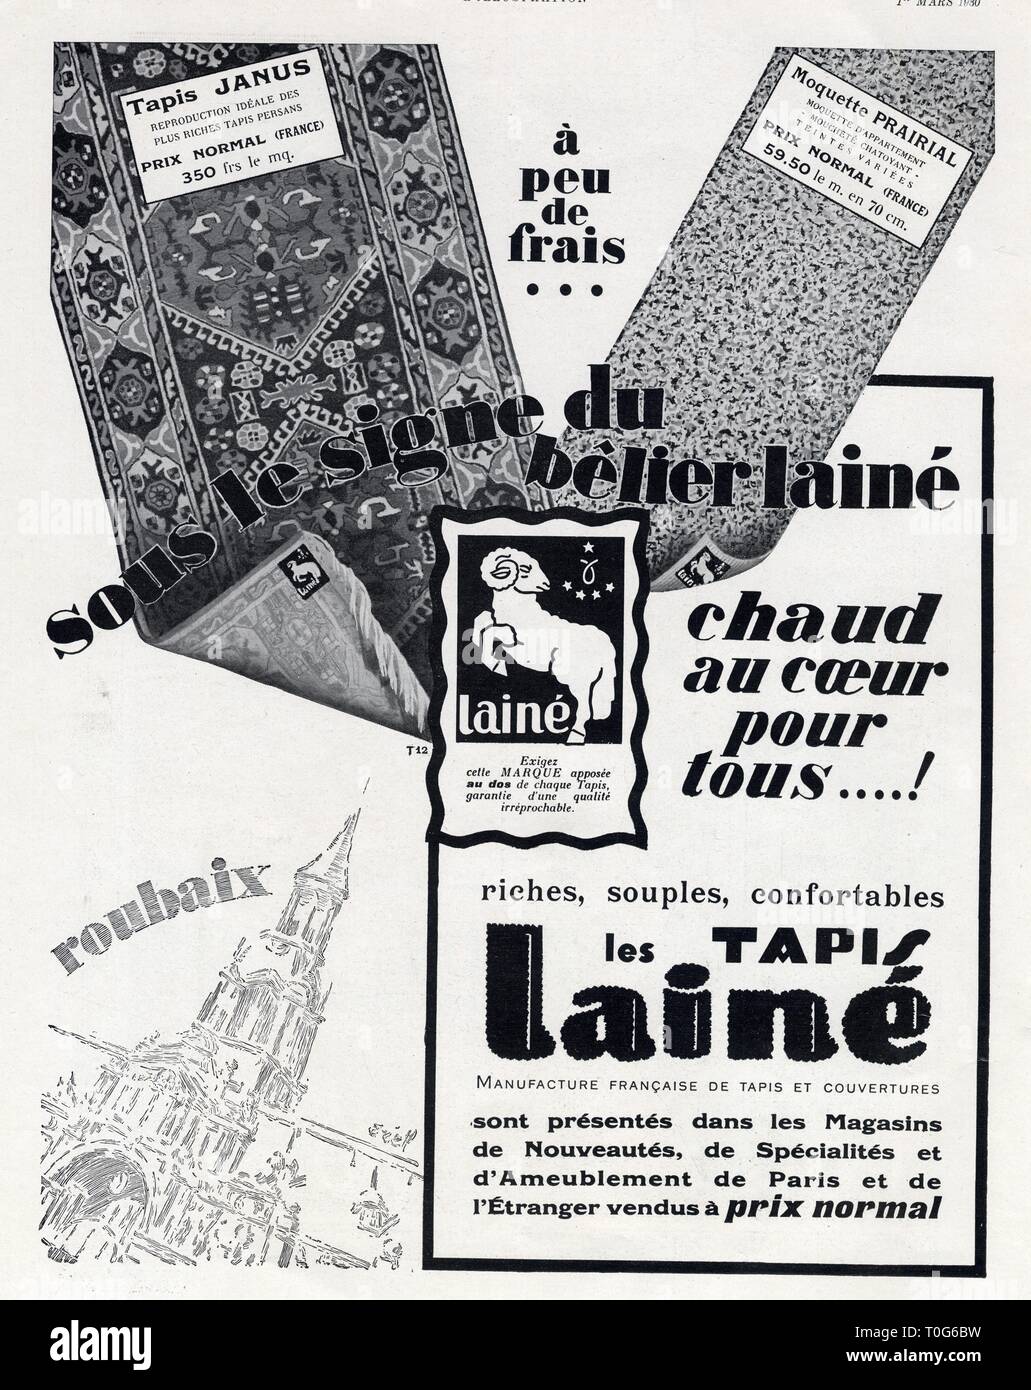 Publicité ancienne. 1 mars 1930. Les tapis Lainé Stock Photo